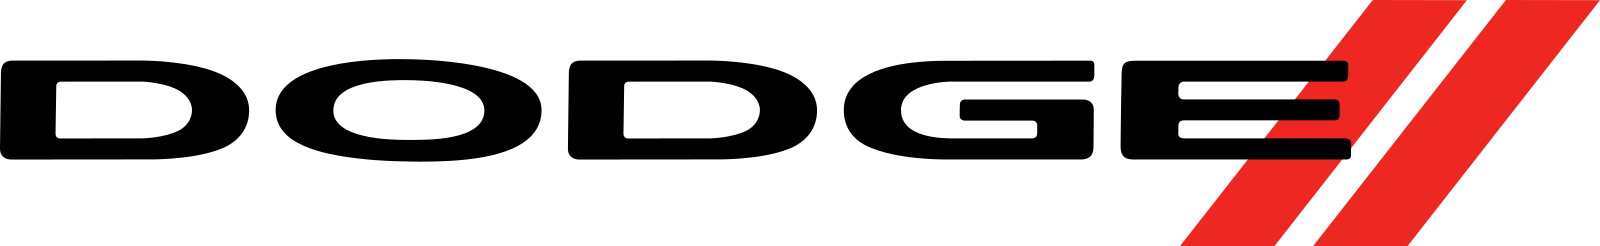 Dodge Logo PNG File